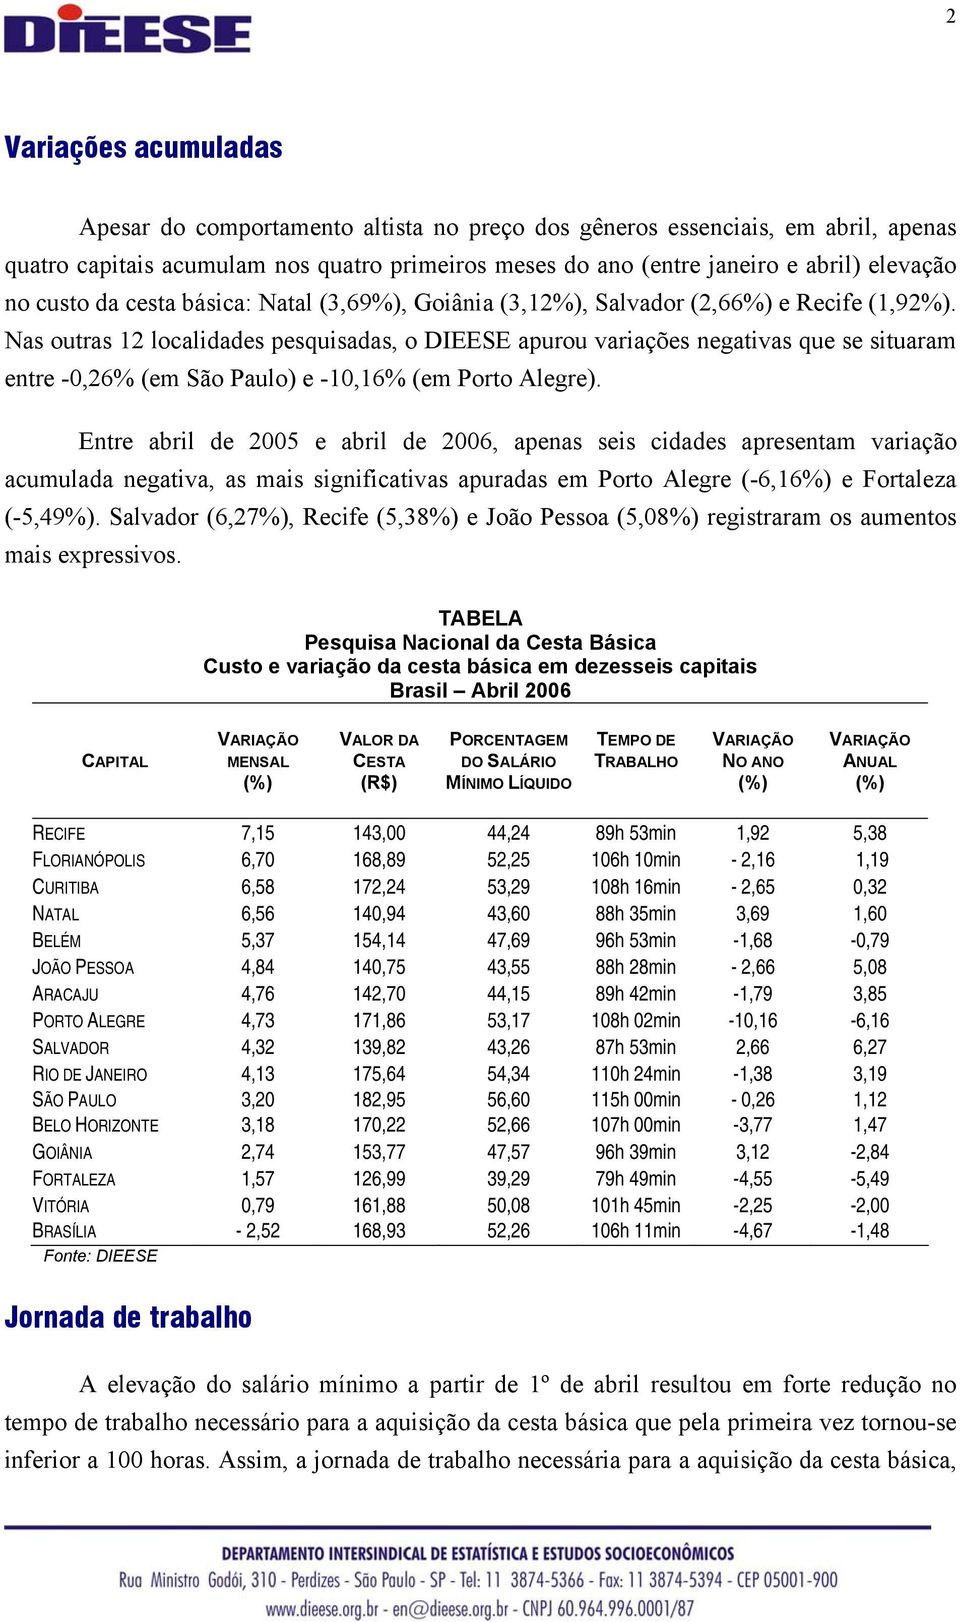 Nas outras 12 localidades pesquisadas, o DIEESE apurou variações negativas que se situaram entre -0,26% (em São Paulo) e -10,16% (em Porto Alegre).